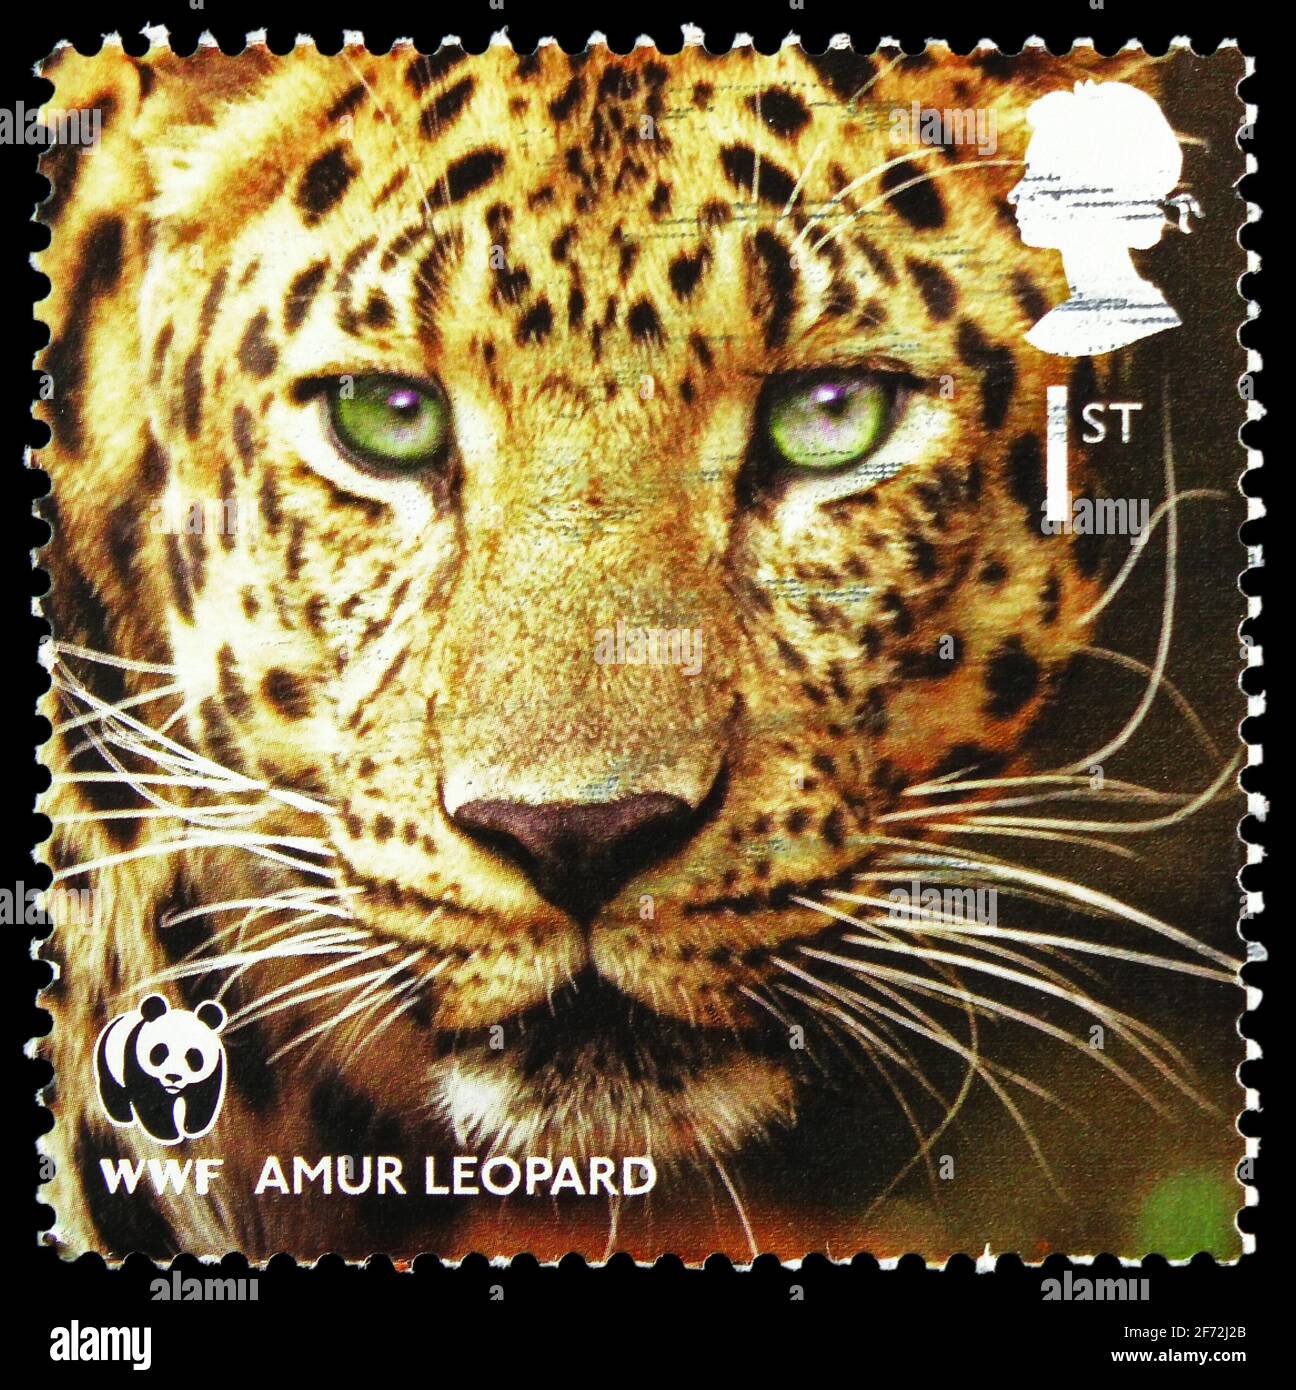 MOSCOU, RUSSIE - 22 DÉCEMBRE 2020 : le timbre-poste imprimé au Royaume-Uni montre Amur Leopard (Panthera pardus orientalis), série du Fonds mondial pour la nature Banque D'Images